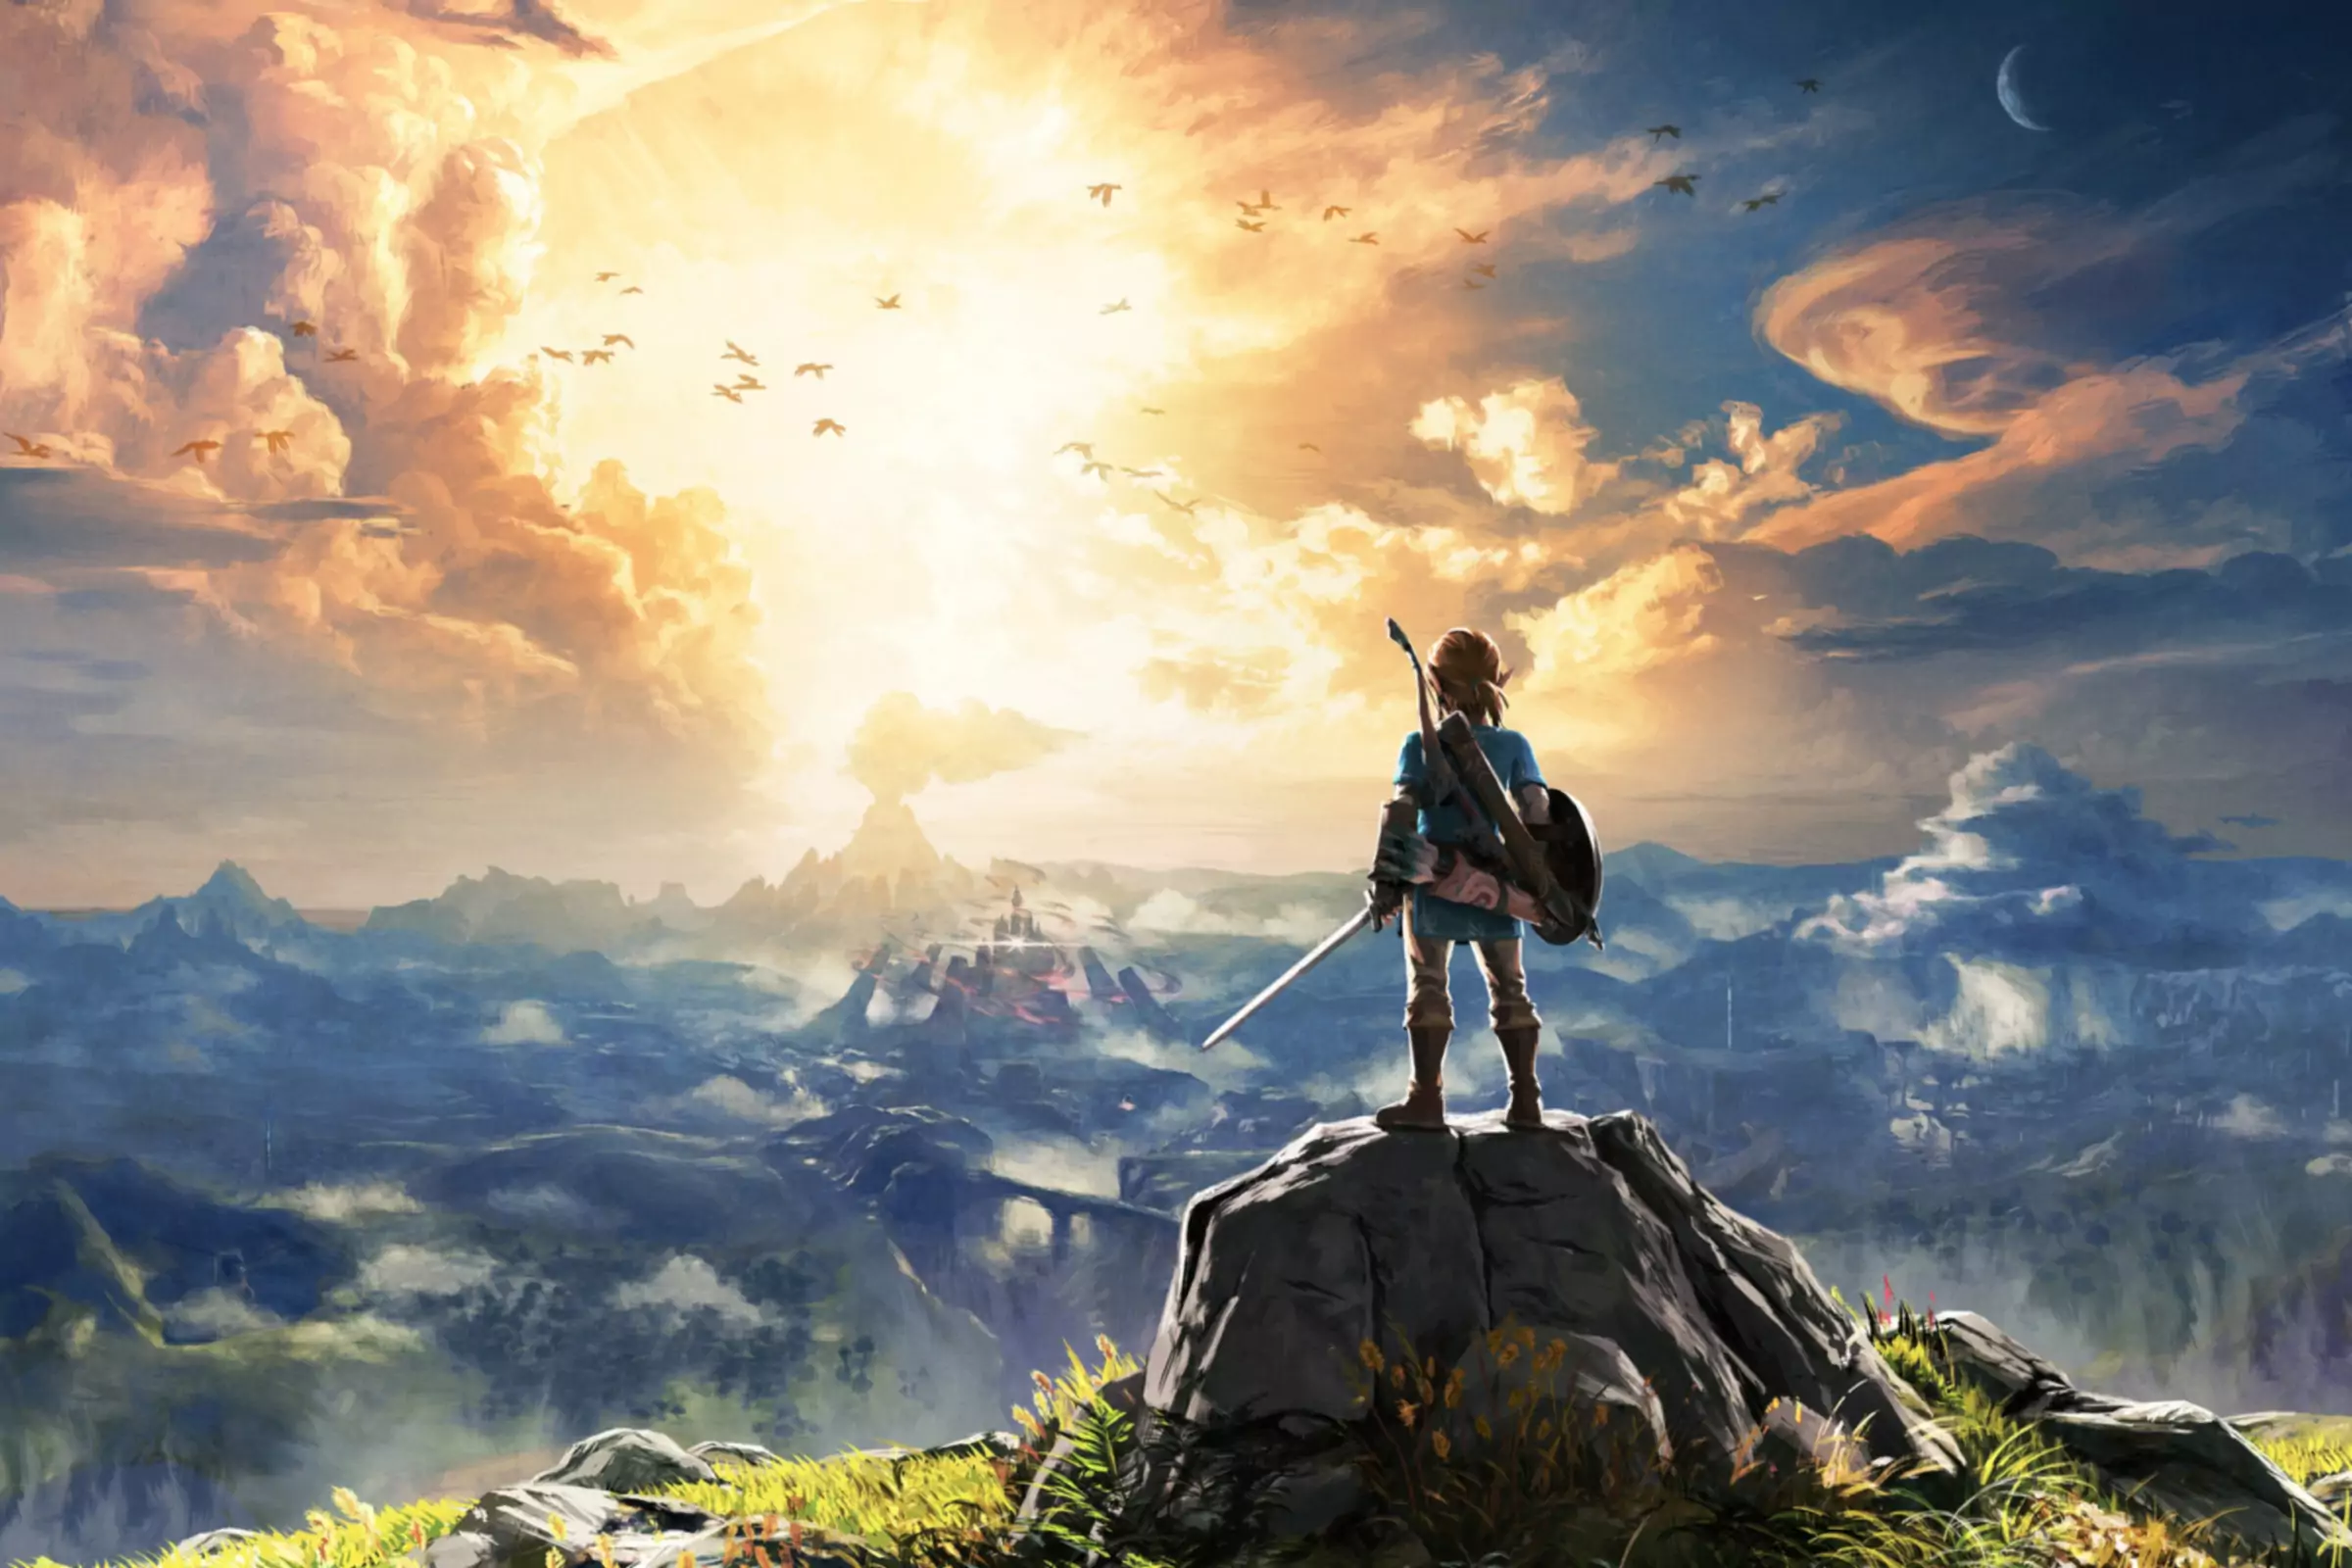 Malovaný artwork hry The Legend of Zelda Breath of the Wild s postavou stojící na vrcholu skály s výhledem na rozlehlou...